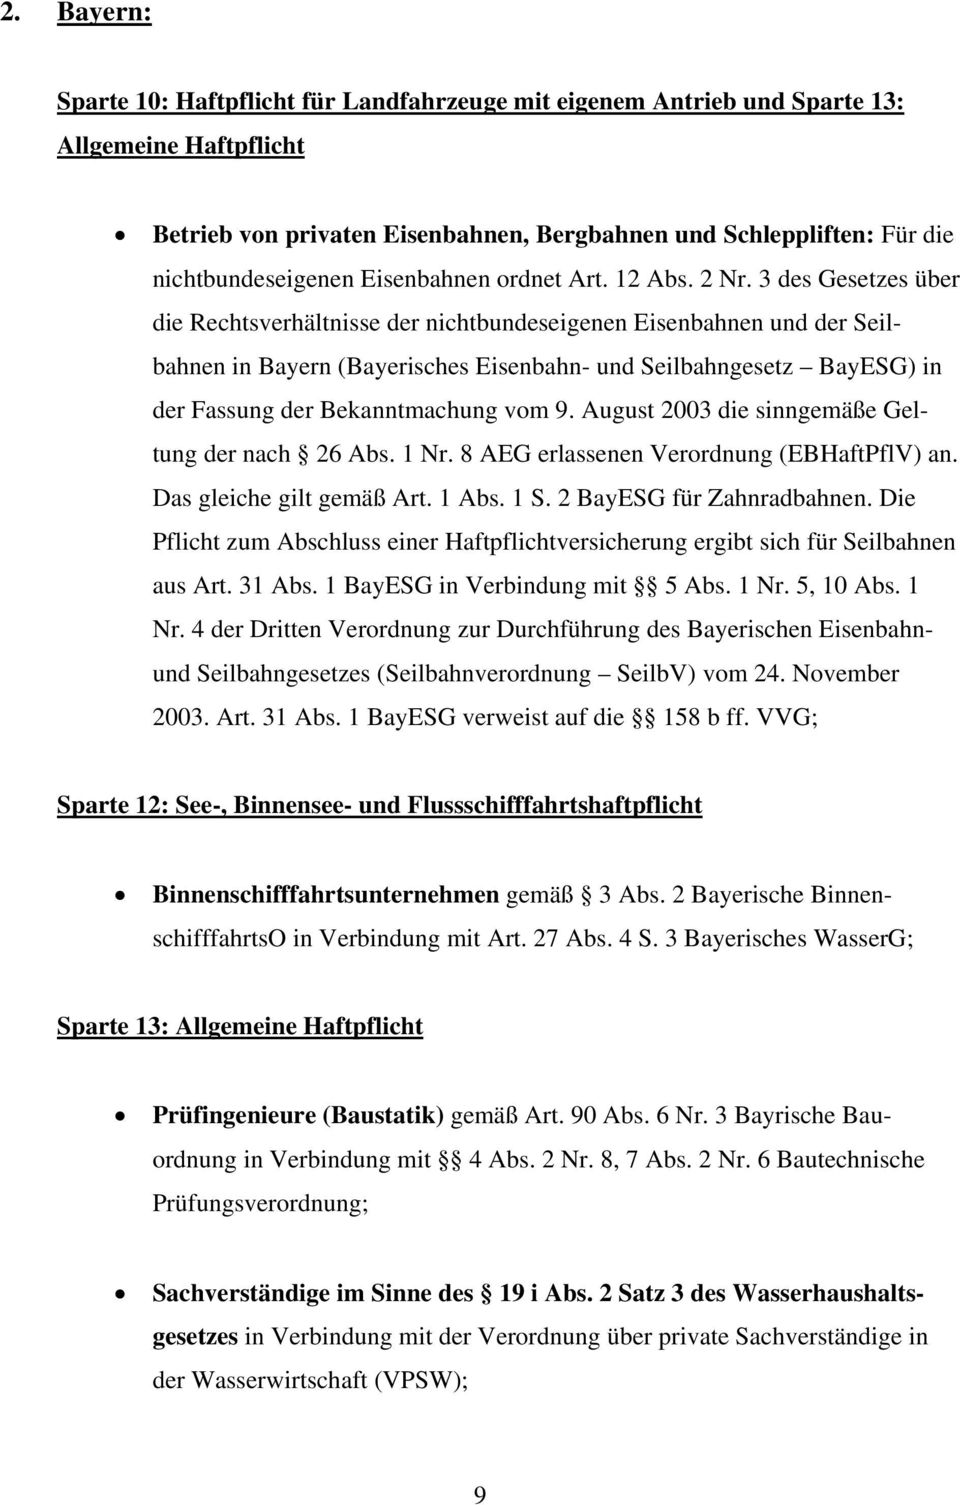 3 des Gesetzes über die Rechtsverhältnisse der nichtbundeseigenen Eisenbahnen und der Seilbahnen in Bayern (Bayerisches Eisenbahn- und Seilbahngesetz BayESG) in der Fassung der Bekanntmachung vom 9.